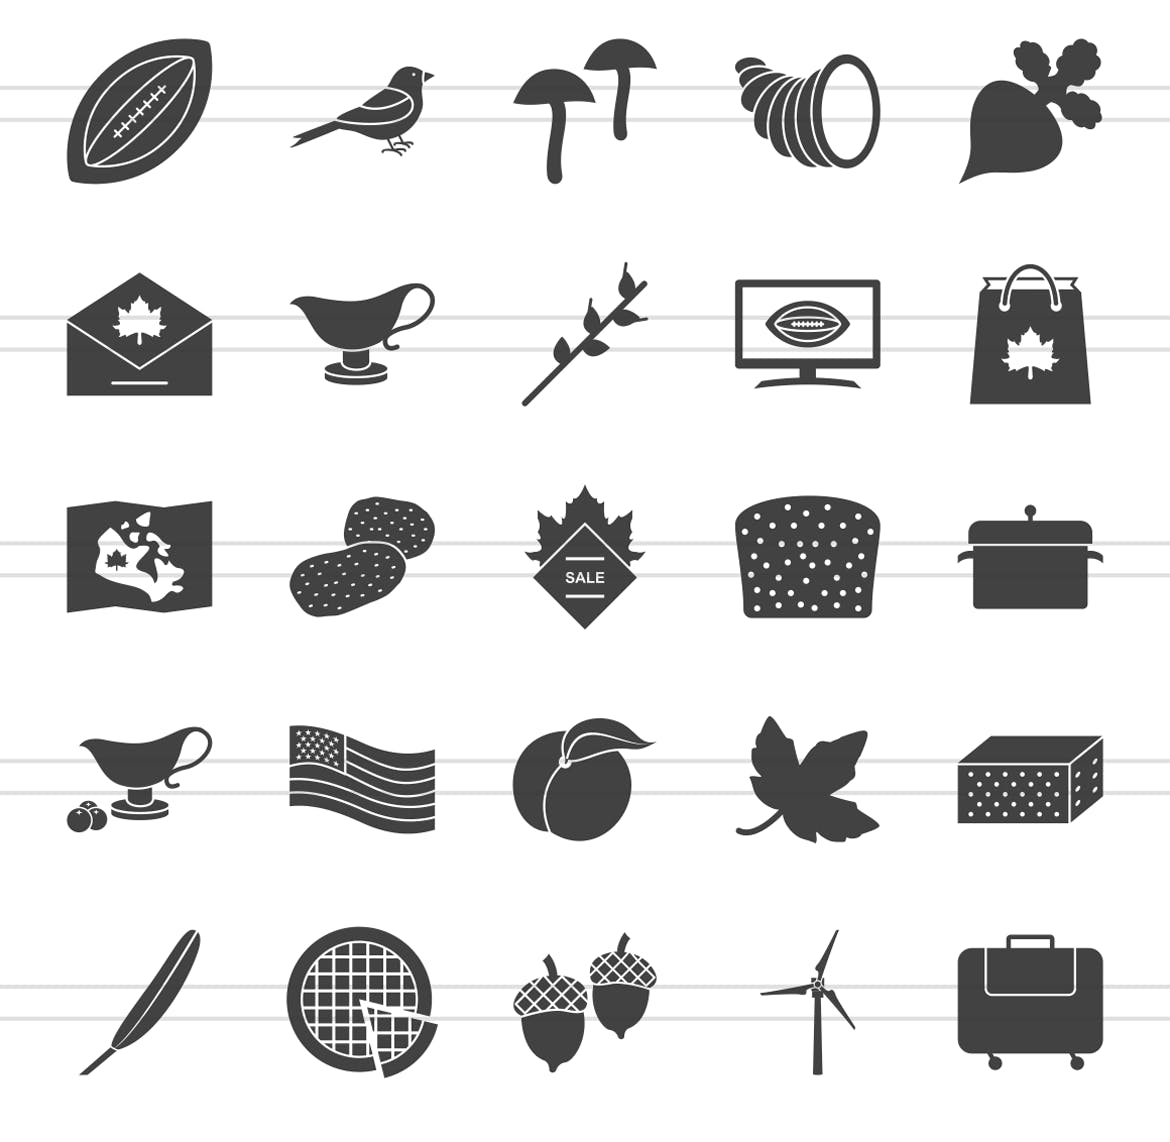 50枚感恩节主题矢量字体16设计素材网精选图标 50 Thanksgiving Glyph Icons插图(2)